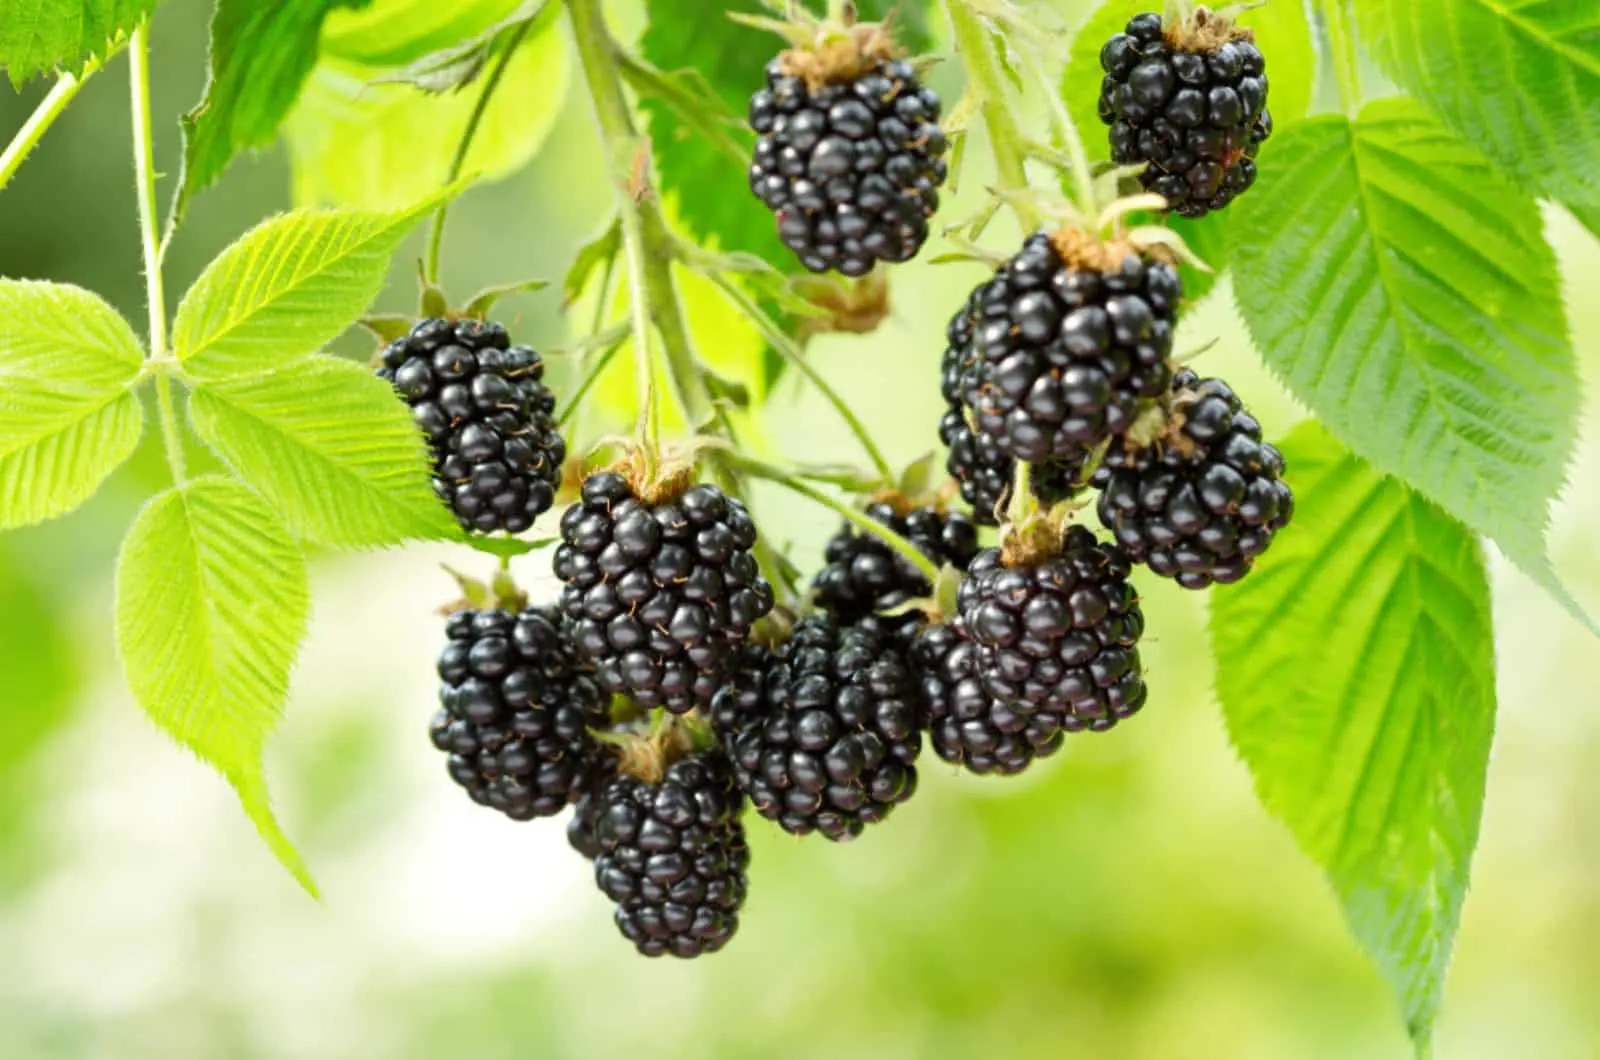 ripe blackberry in a garden